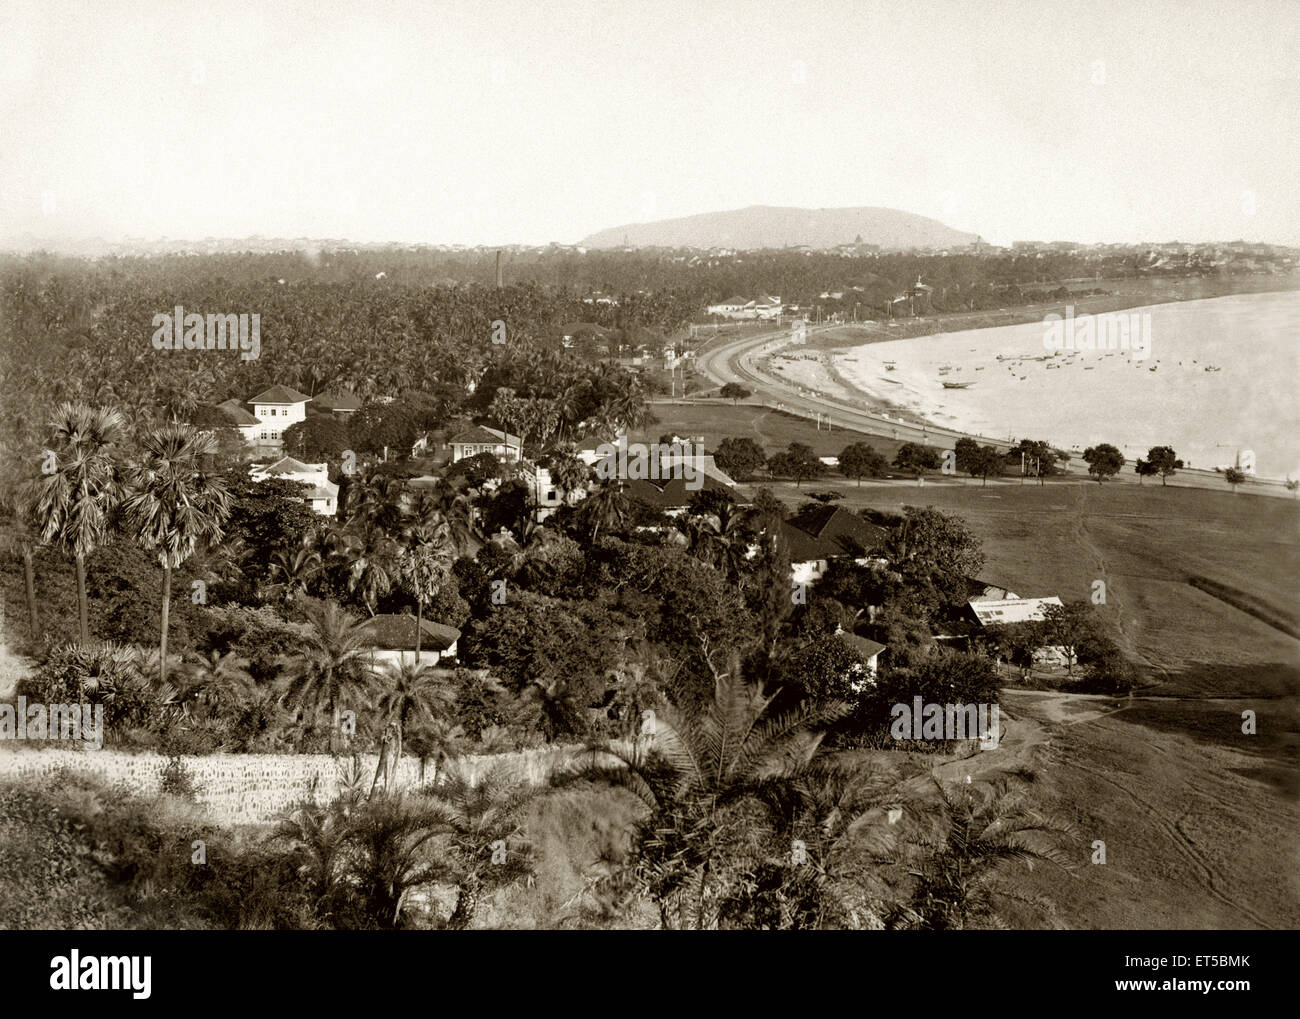 Chowpatty beach, Girgaon, Girgaum Chowpatty, Girgaon Chowpatty, Marine Drive, Queens Necklace, Bombay, Mumbai, Maharashtra, India, old vintage 1800s Stock Photo